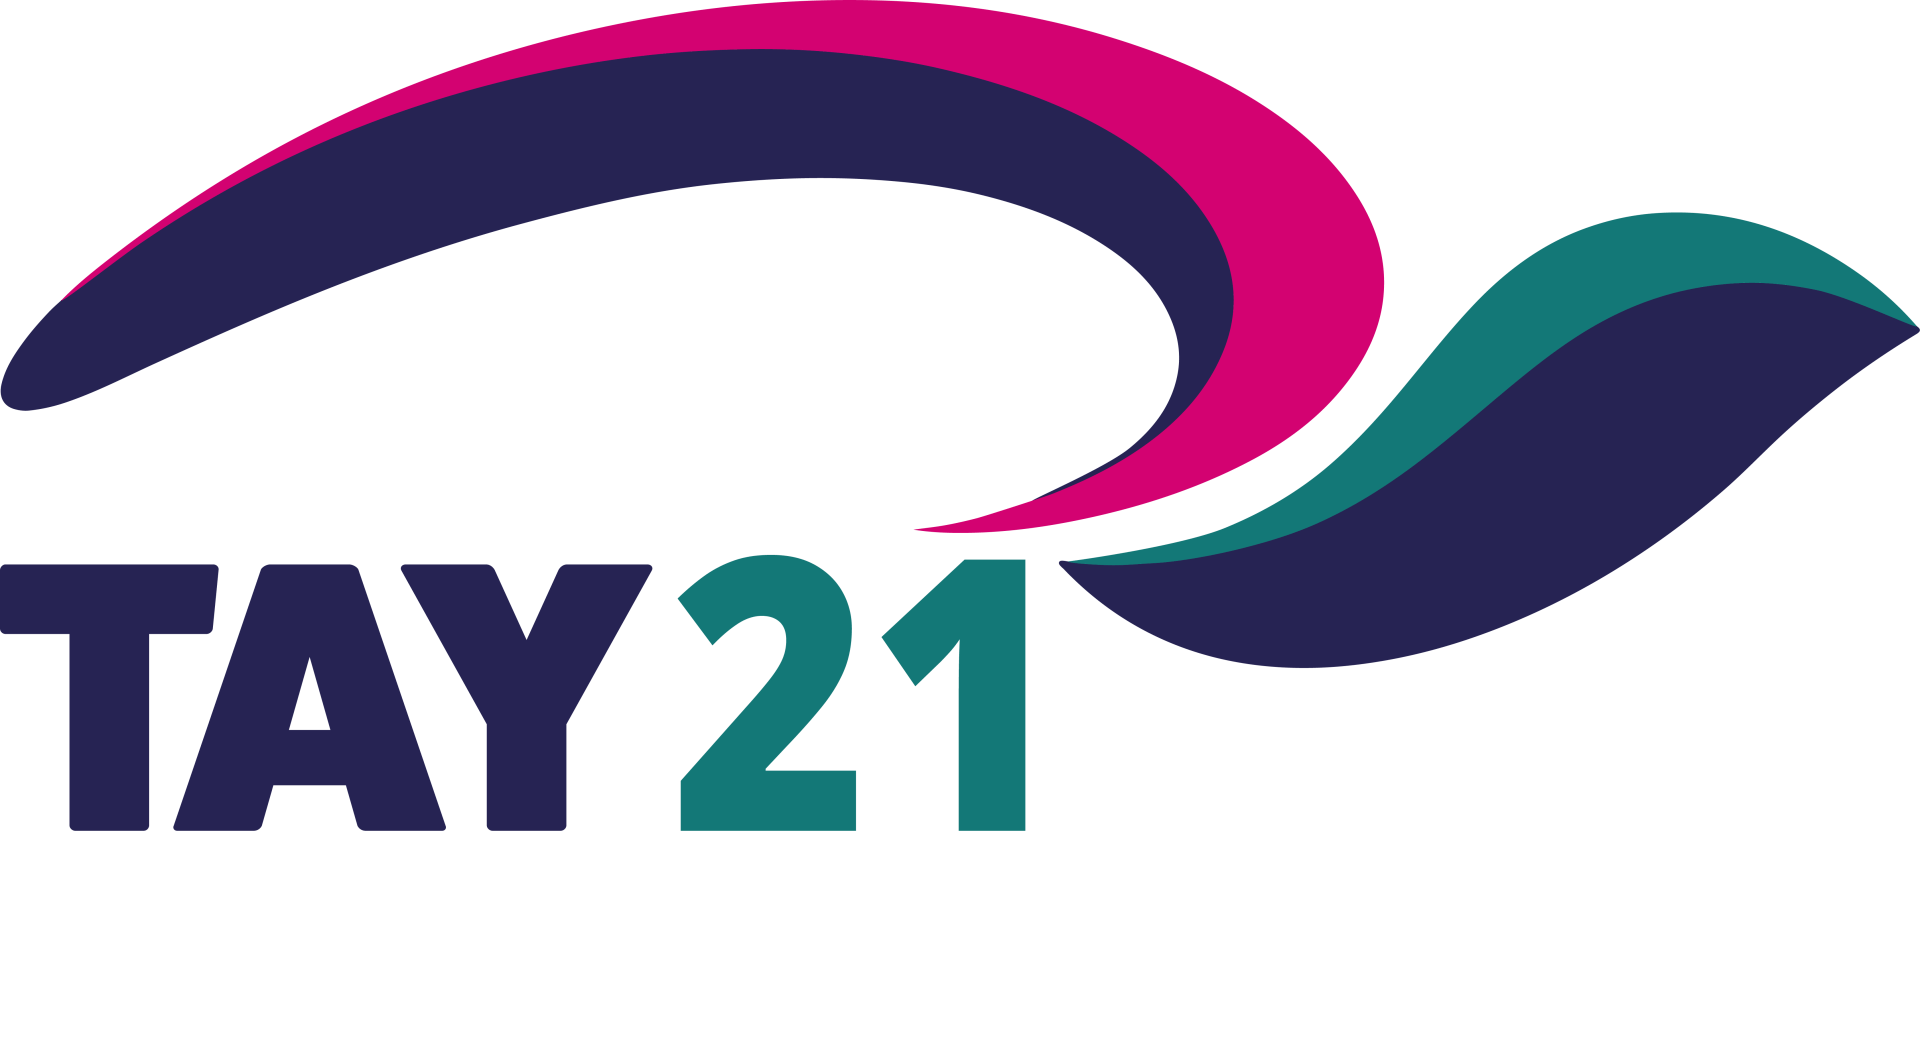 Tay 21 Logo